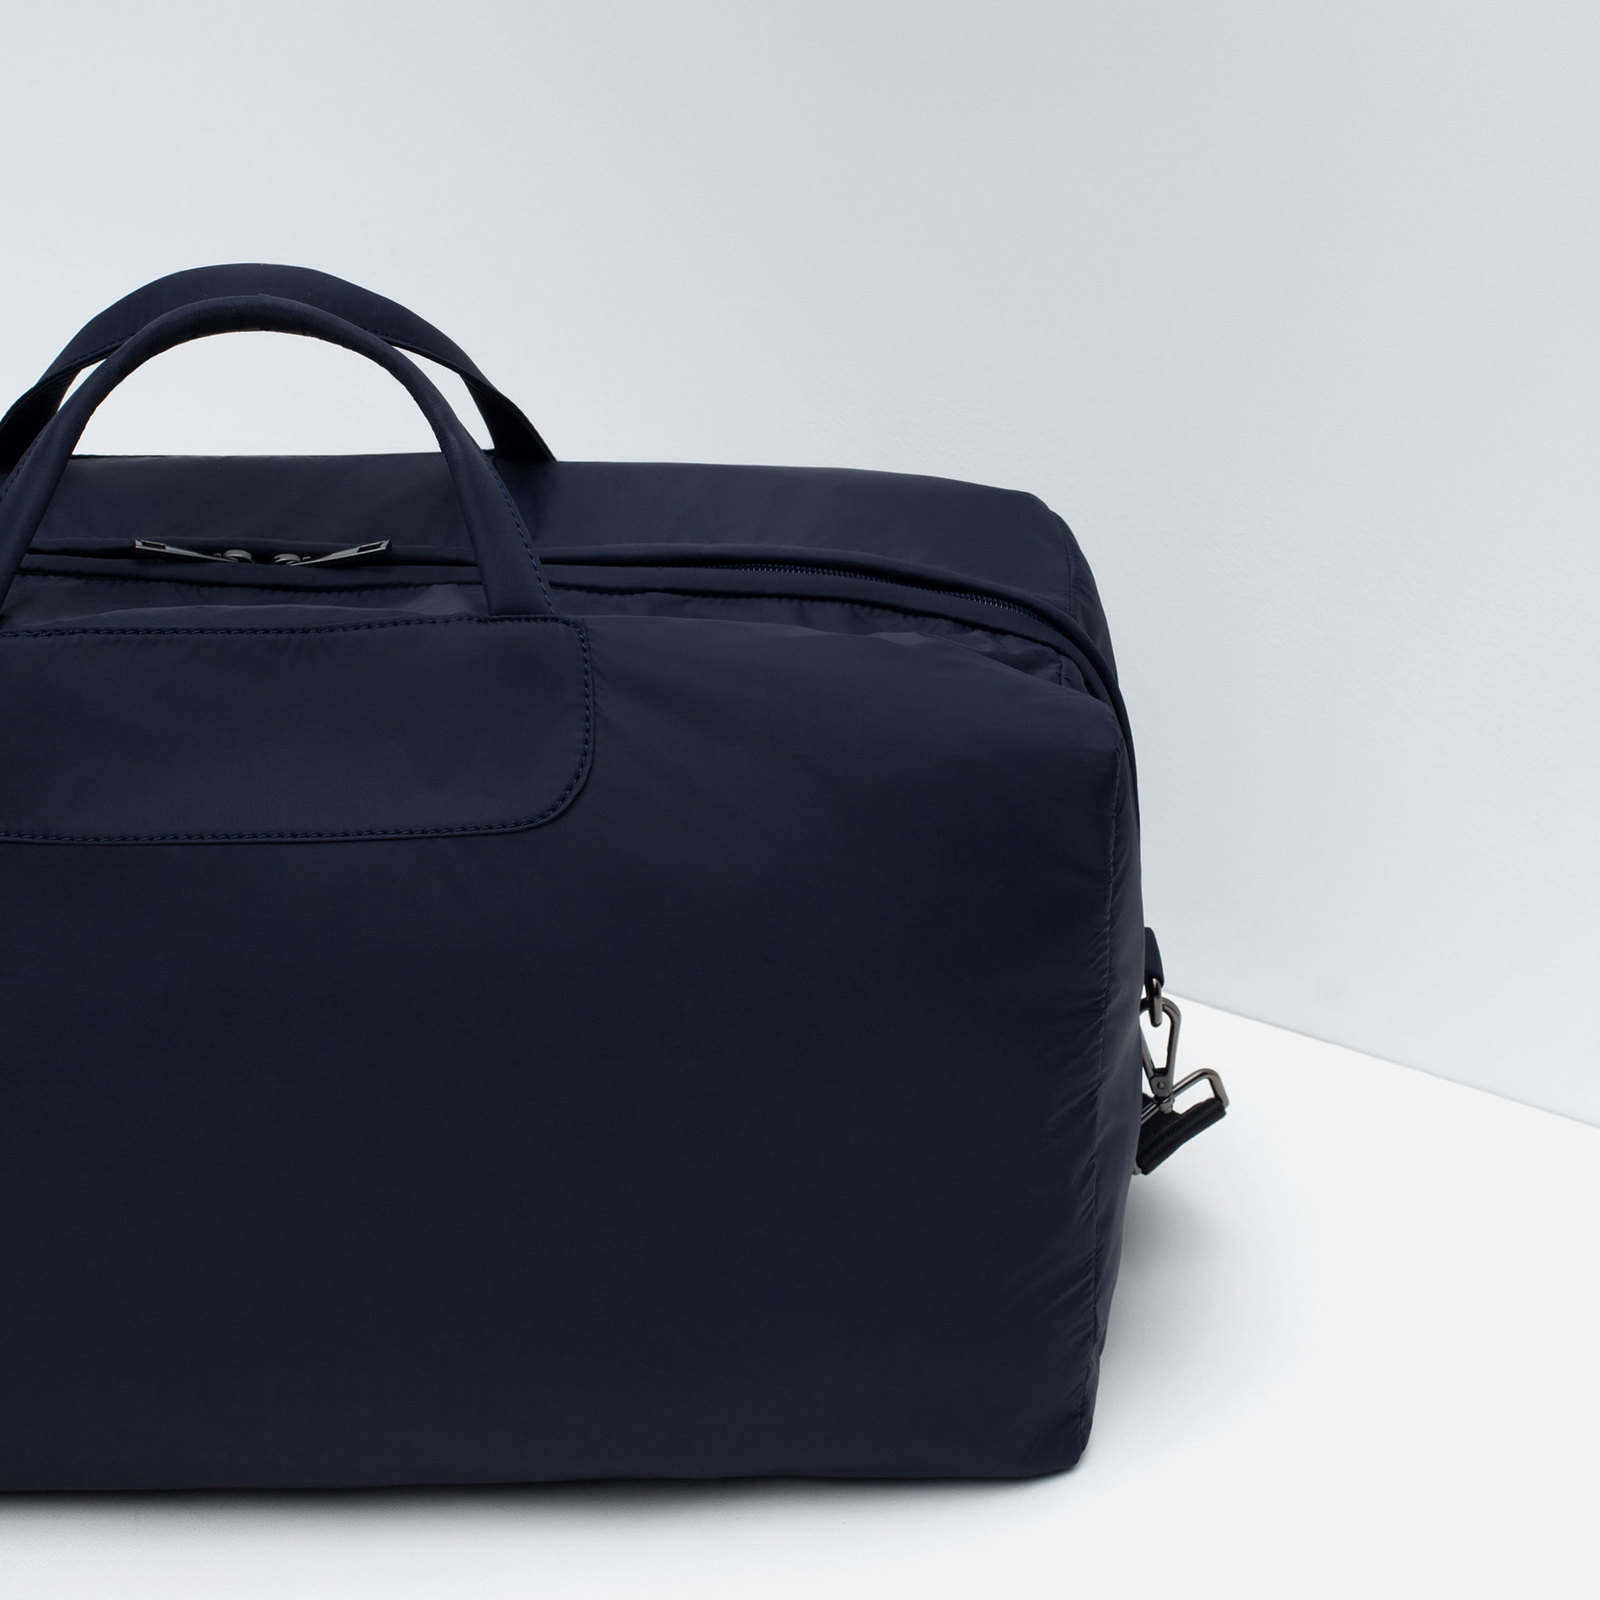 Zara kék puha férfi táska 2015.10.15 fotója